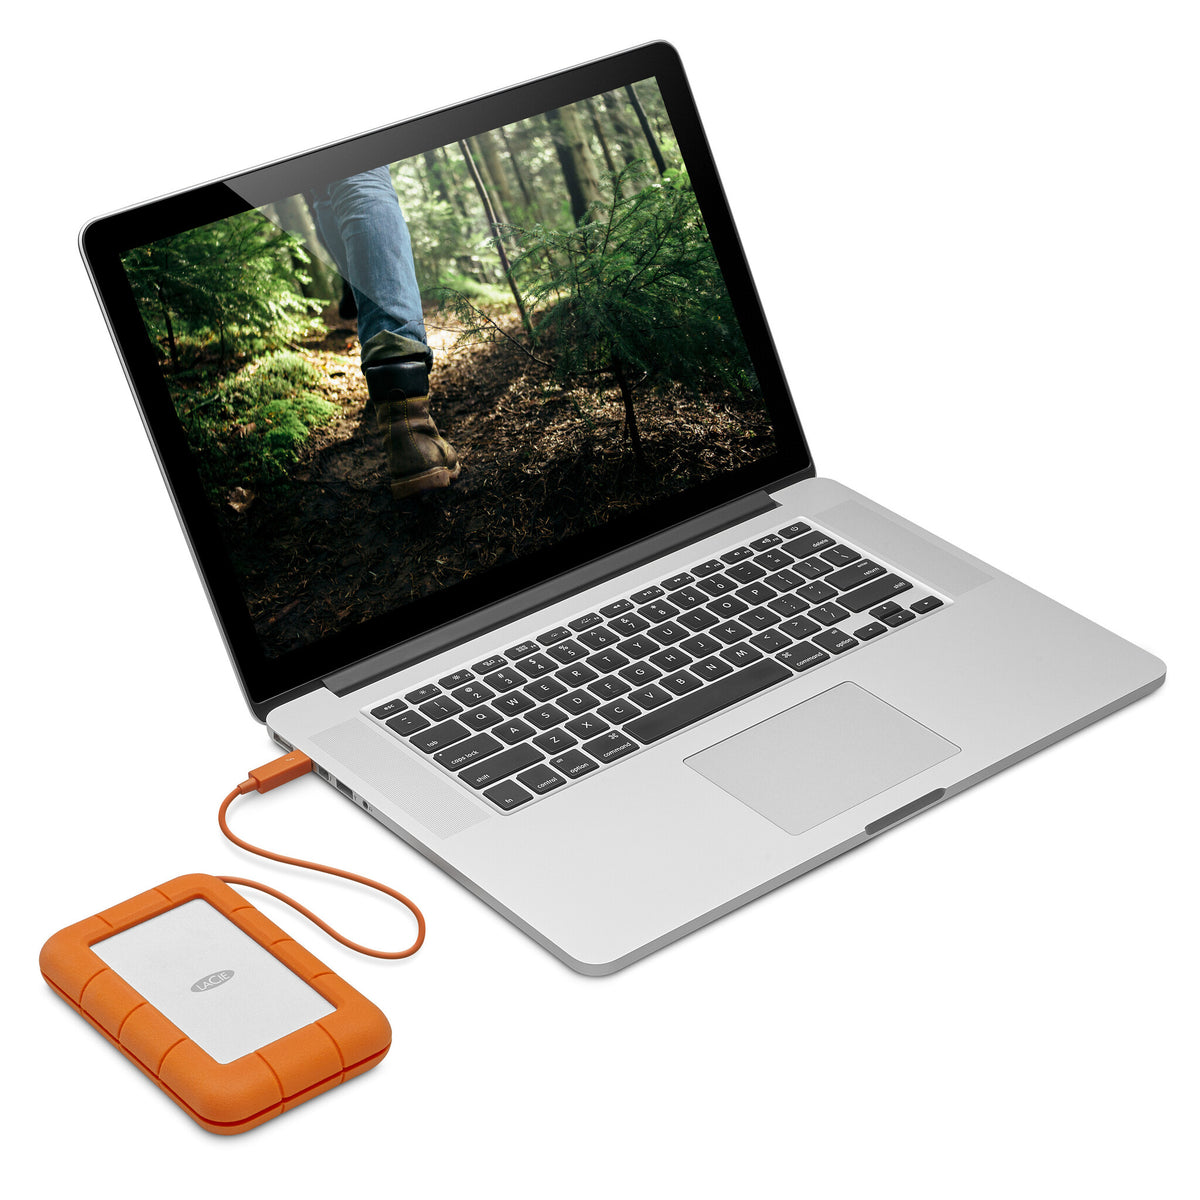 LaCie Rugged - USB-C External HDD in Orange - 2 TB